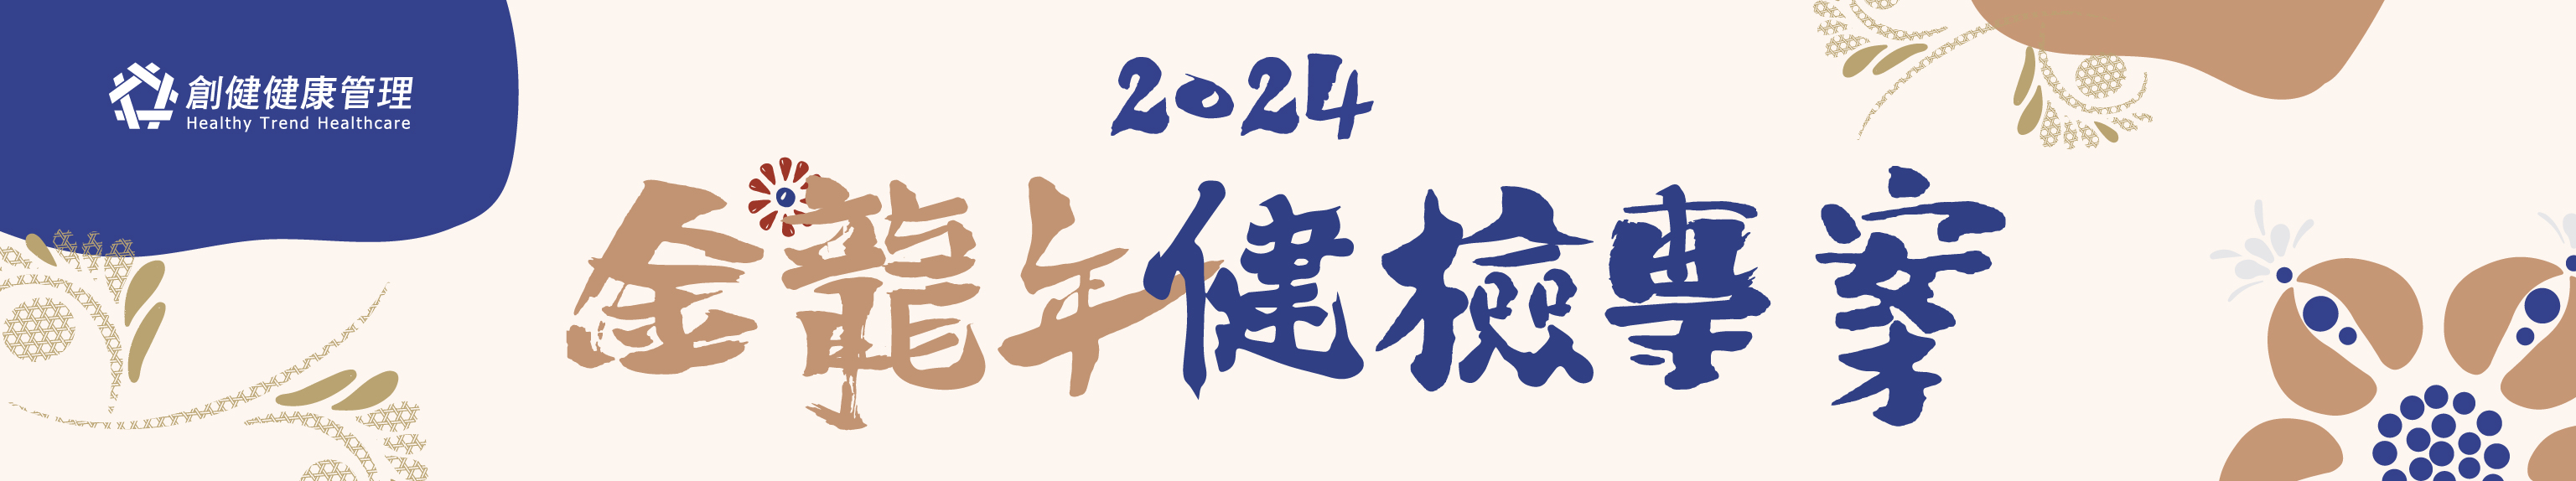 2024金龍年健檢-Link活動專案模組